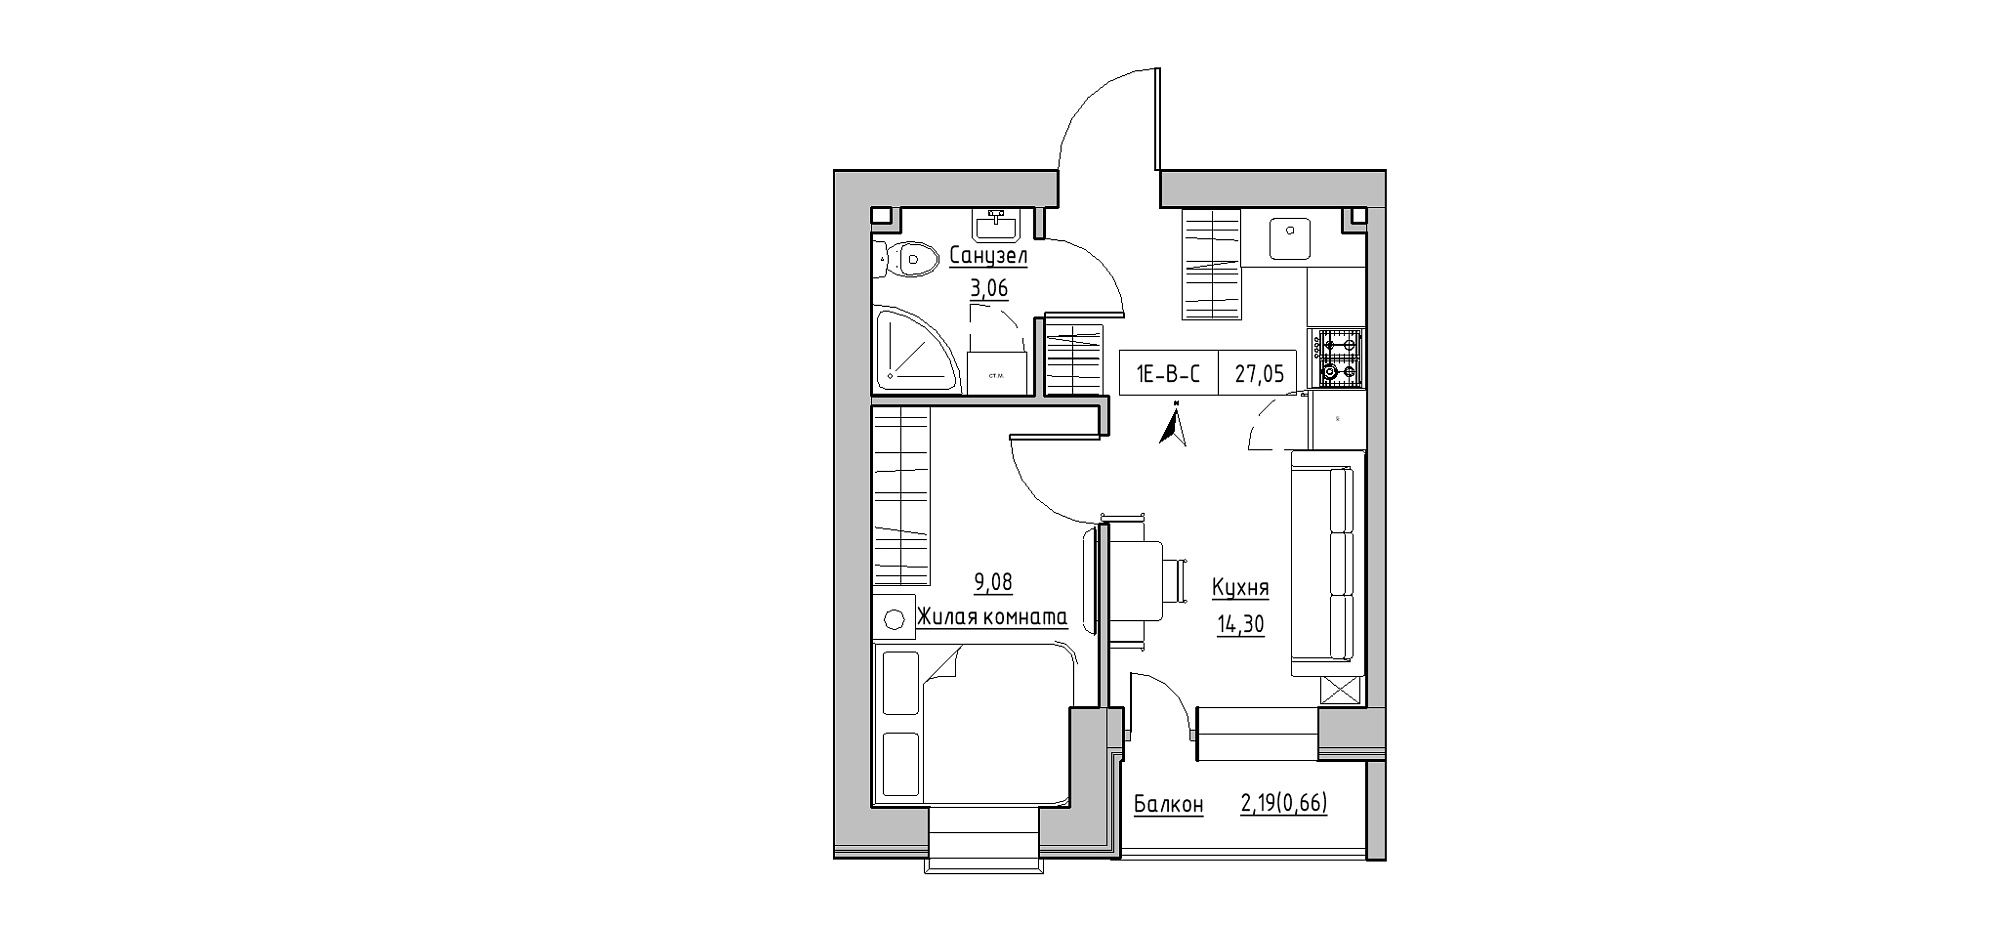 Планировка 1-к квартира площей 27.05м2, KS-020-05/0008.